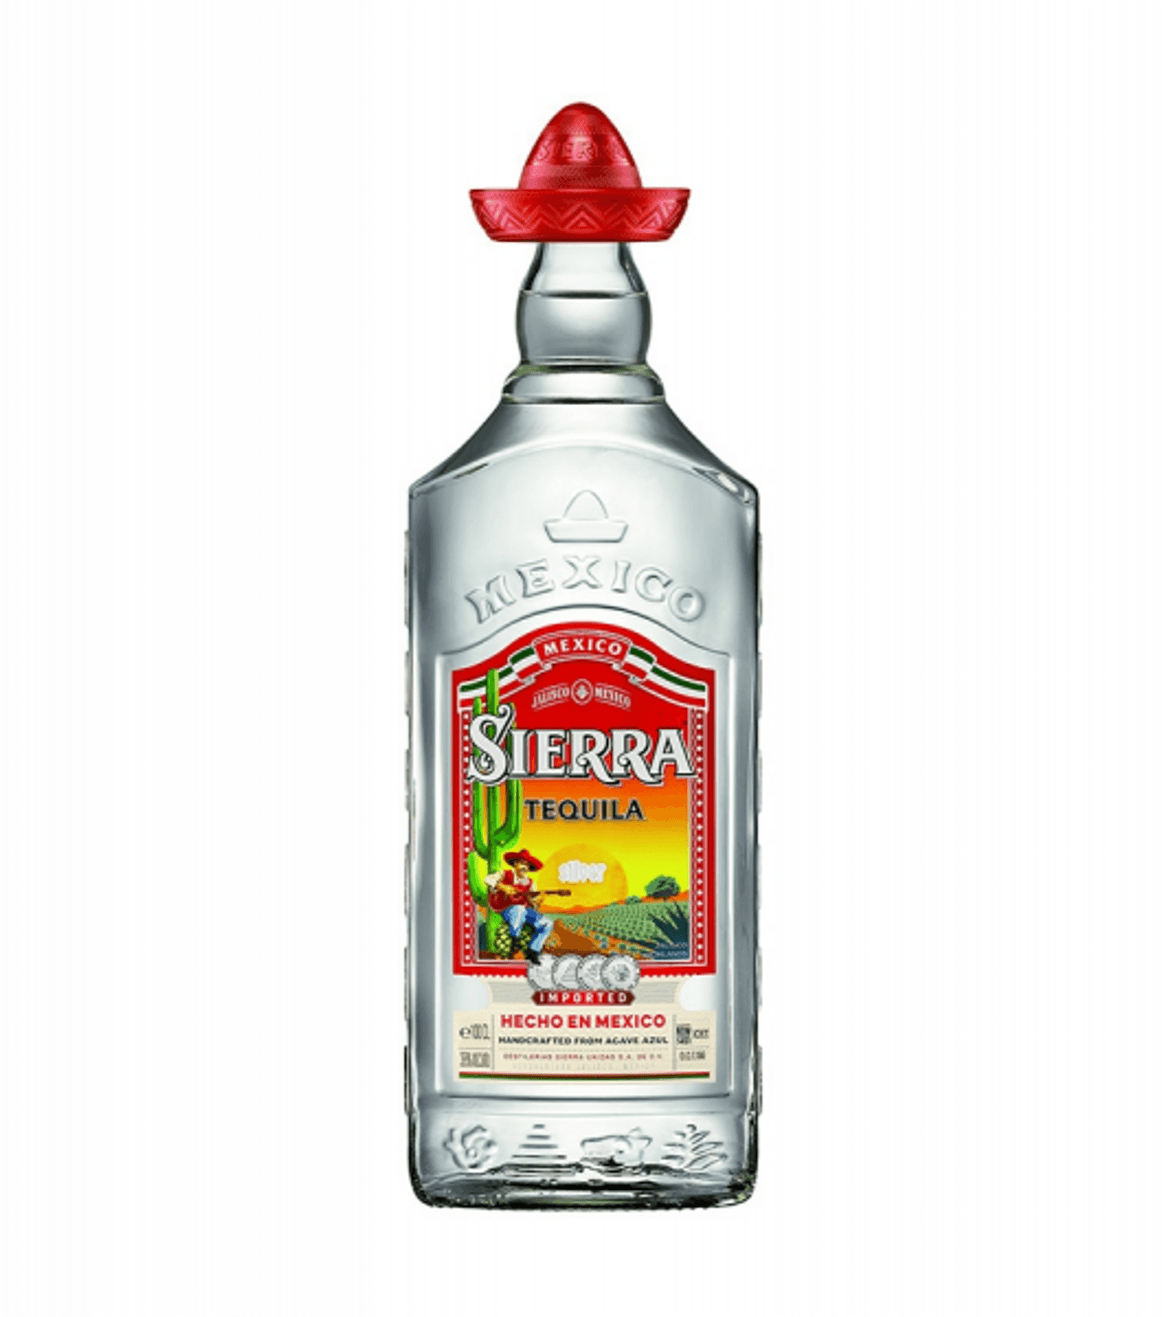 Sierra Silver tequila 38%